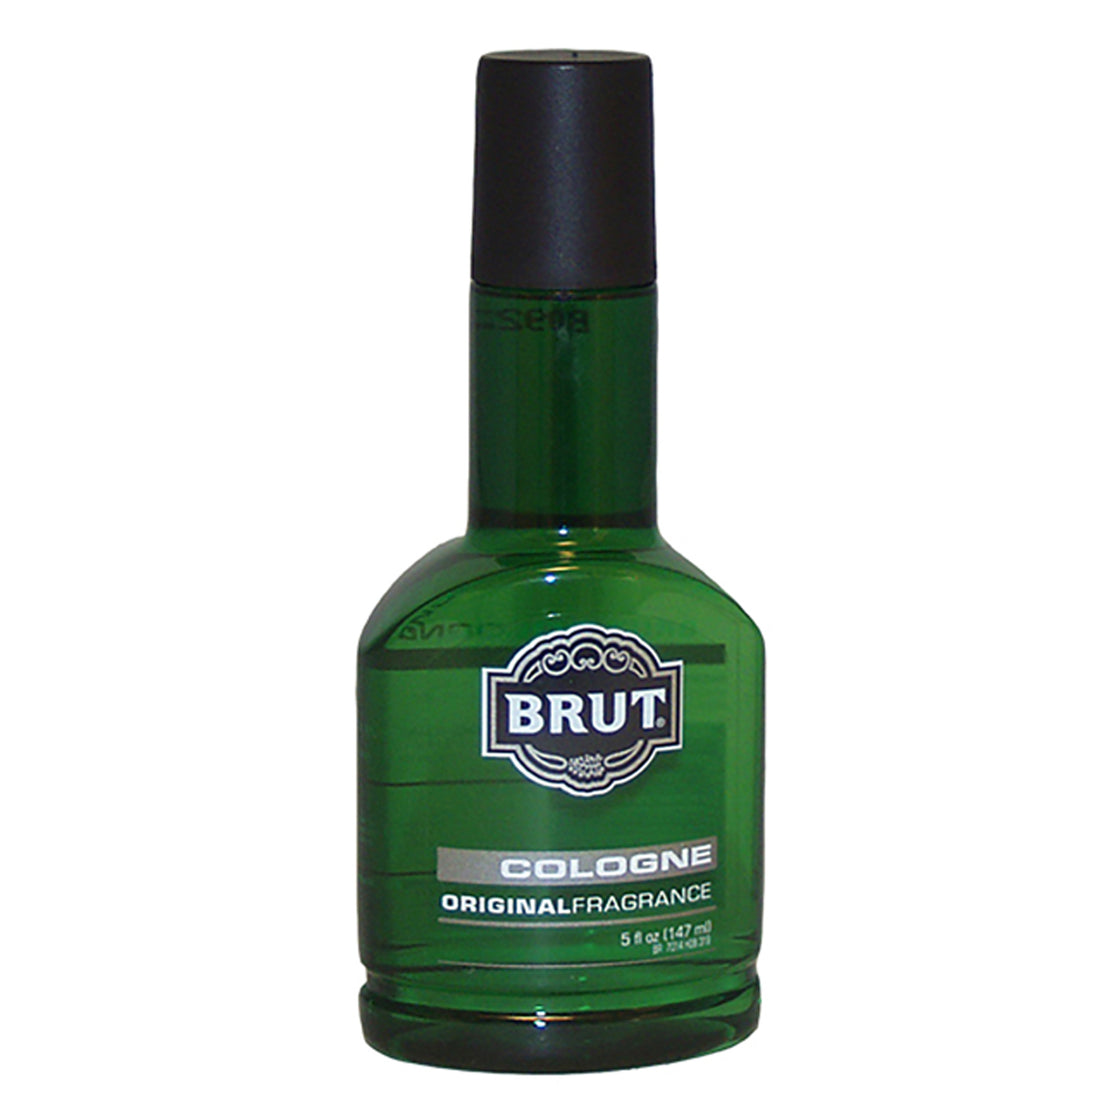 Original Fragrance Cologne by Brut for Men - 5 oz Cologne